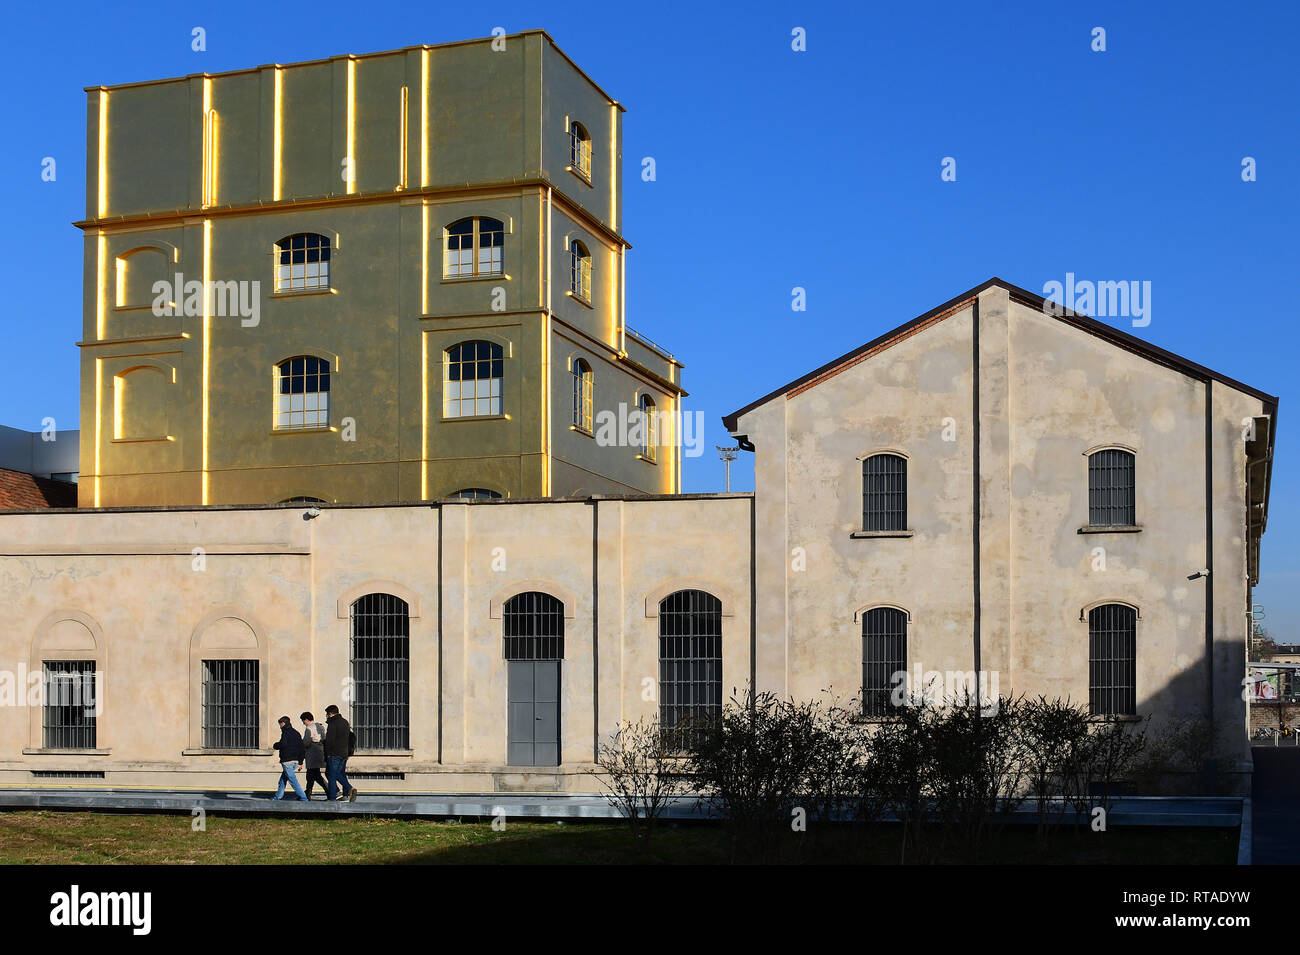 Die Fondazione Prada Komplex aus der neuen Adriano Olivetti Platz gesehen, in der Symbiose. Auf der linken Seite, die goldenen Haunted House gesehen werden kann Stockfoto